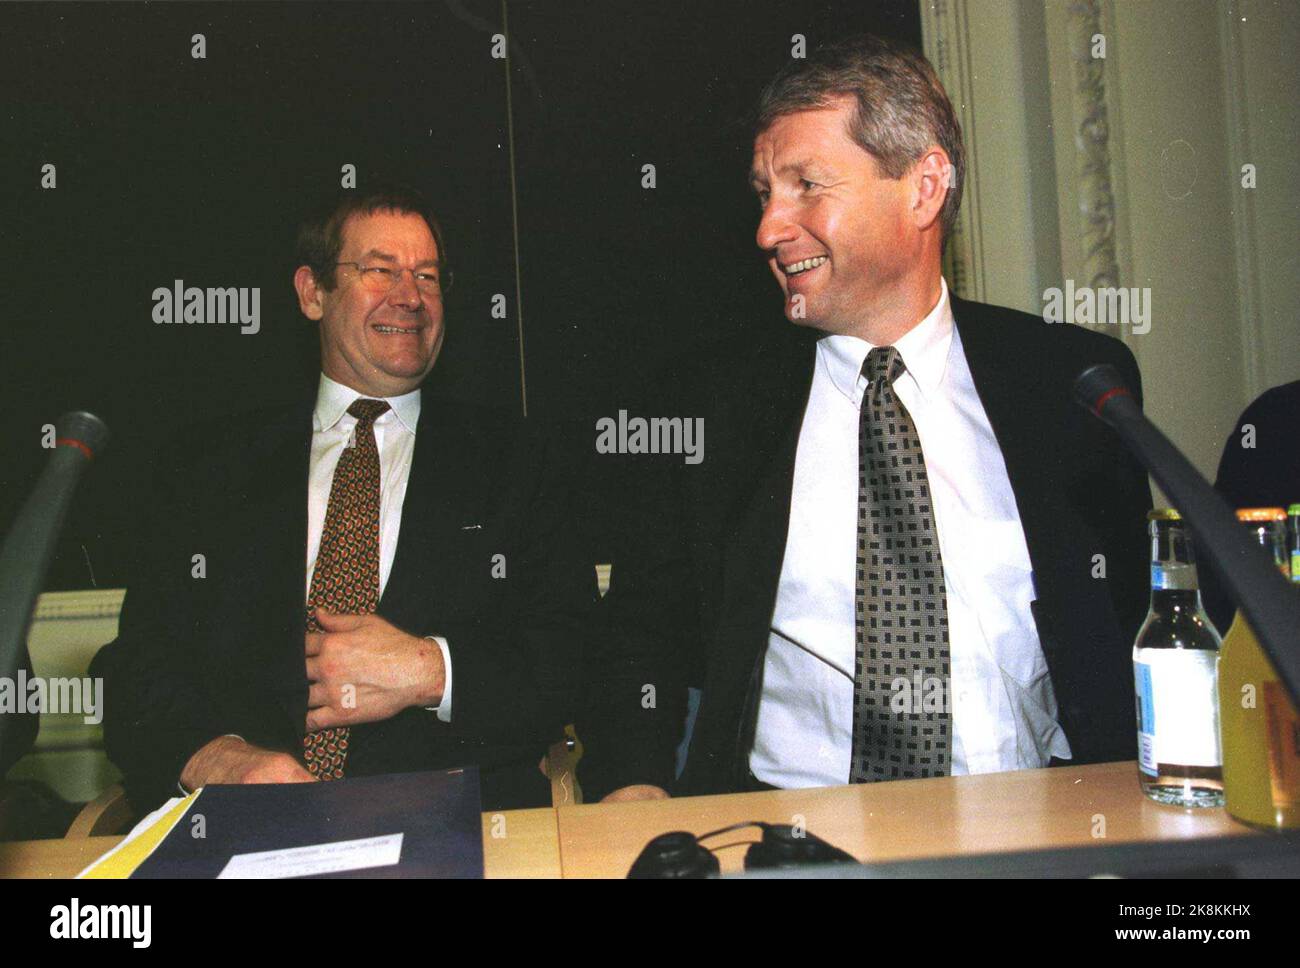 Kopenhagen, Dänemark 19961111: Premierminister Thorbjørn Jagland führt ein fröhliches Gespräch mit Dänemarks Premierminister Poul Nyrup Rasmussen. NTB-Foto: Jon EEG / NTB-Besuch / Dänemark / Treffen Stockfoto